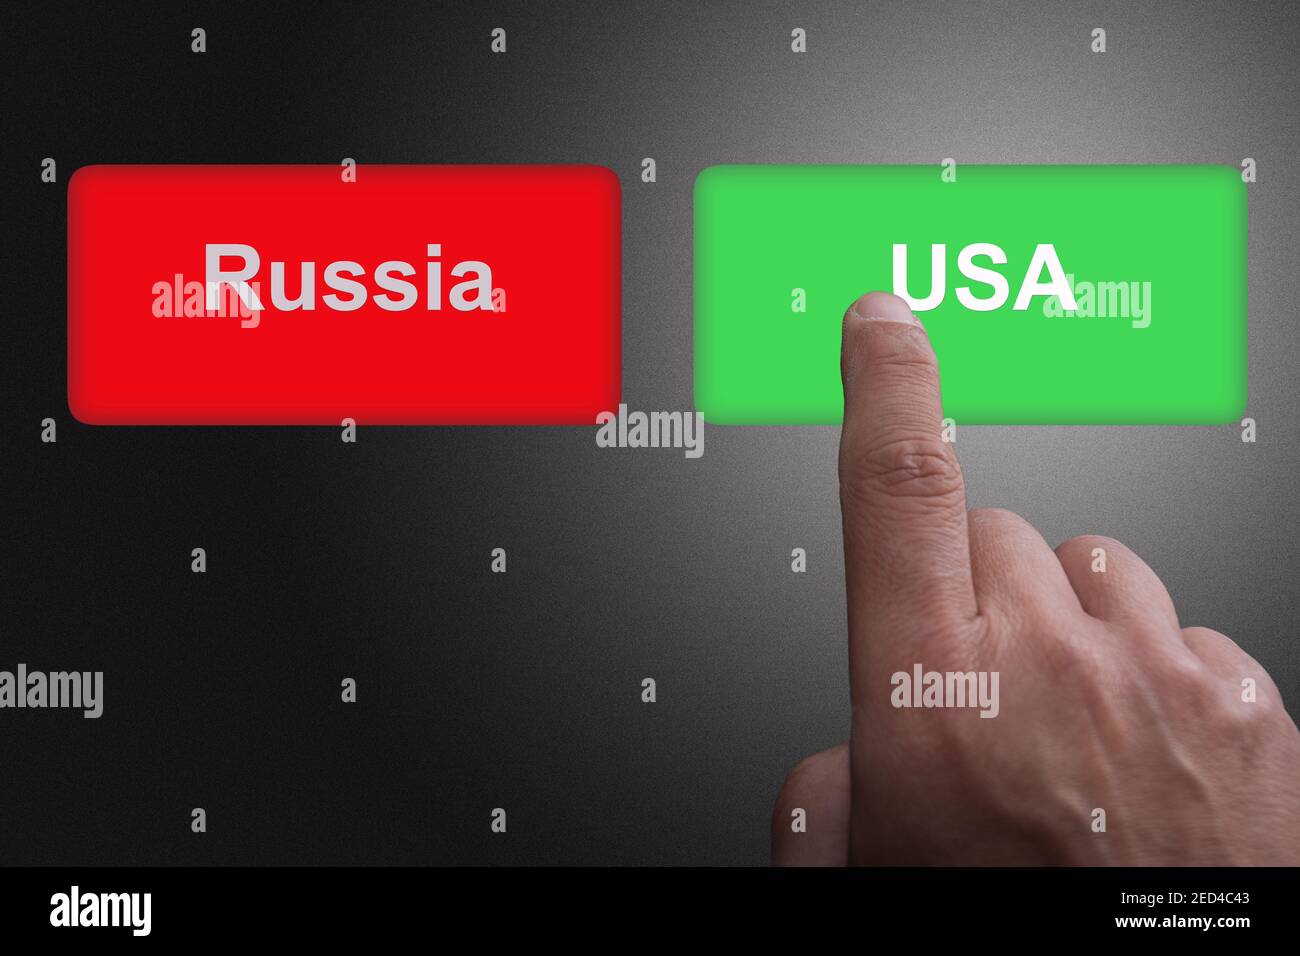 Roter Knopf mit Russland Beschriftung und grüner Knopf mit USA Inschrift Konzept für die Beziehungen zwischen den Vereinigten Staaten und Russland immer Schwierig Stockfoto